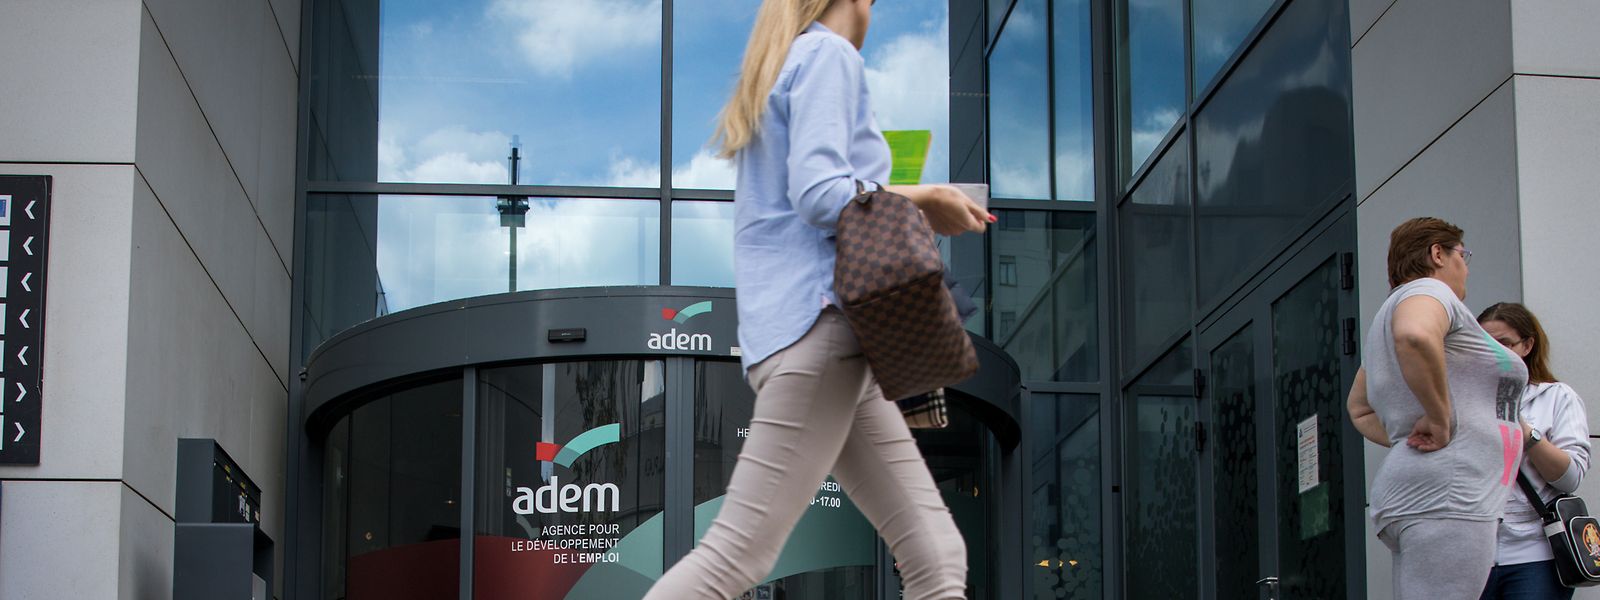 Malgré ce taux de chômage très faible, les entreprises continuent de recruter massivement selon l'ADEM.